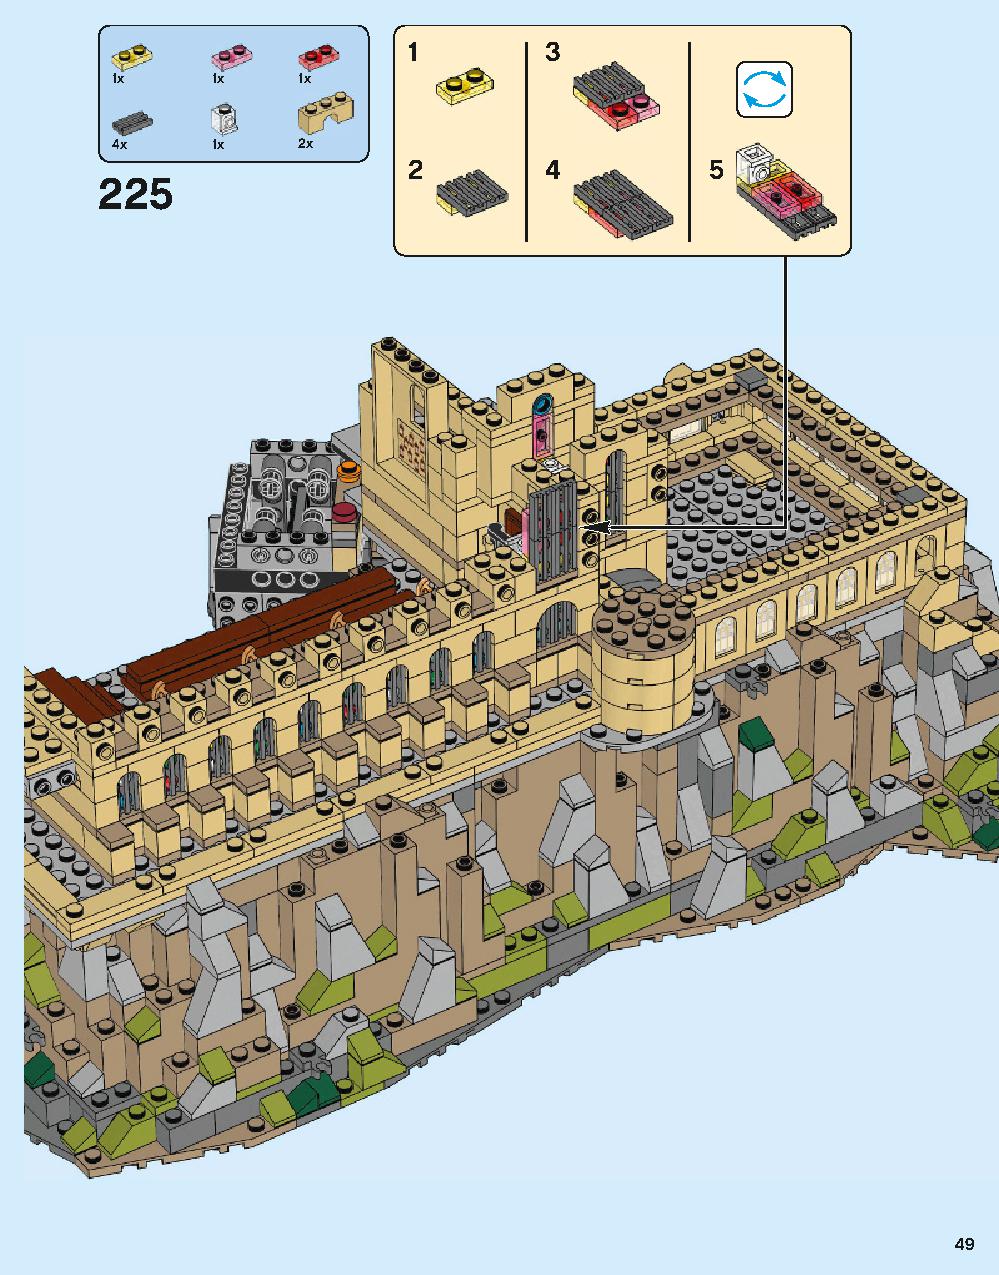 ホグワーツ城 71043 レゴの商品情報 レゴの説明書・組立方法 49 page